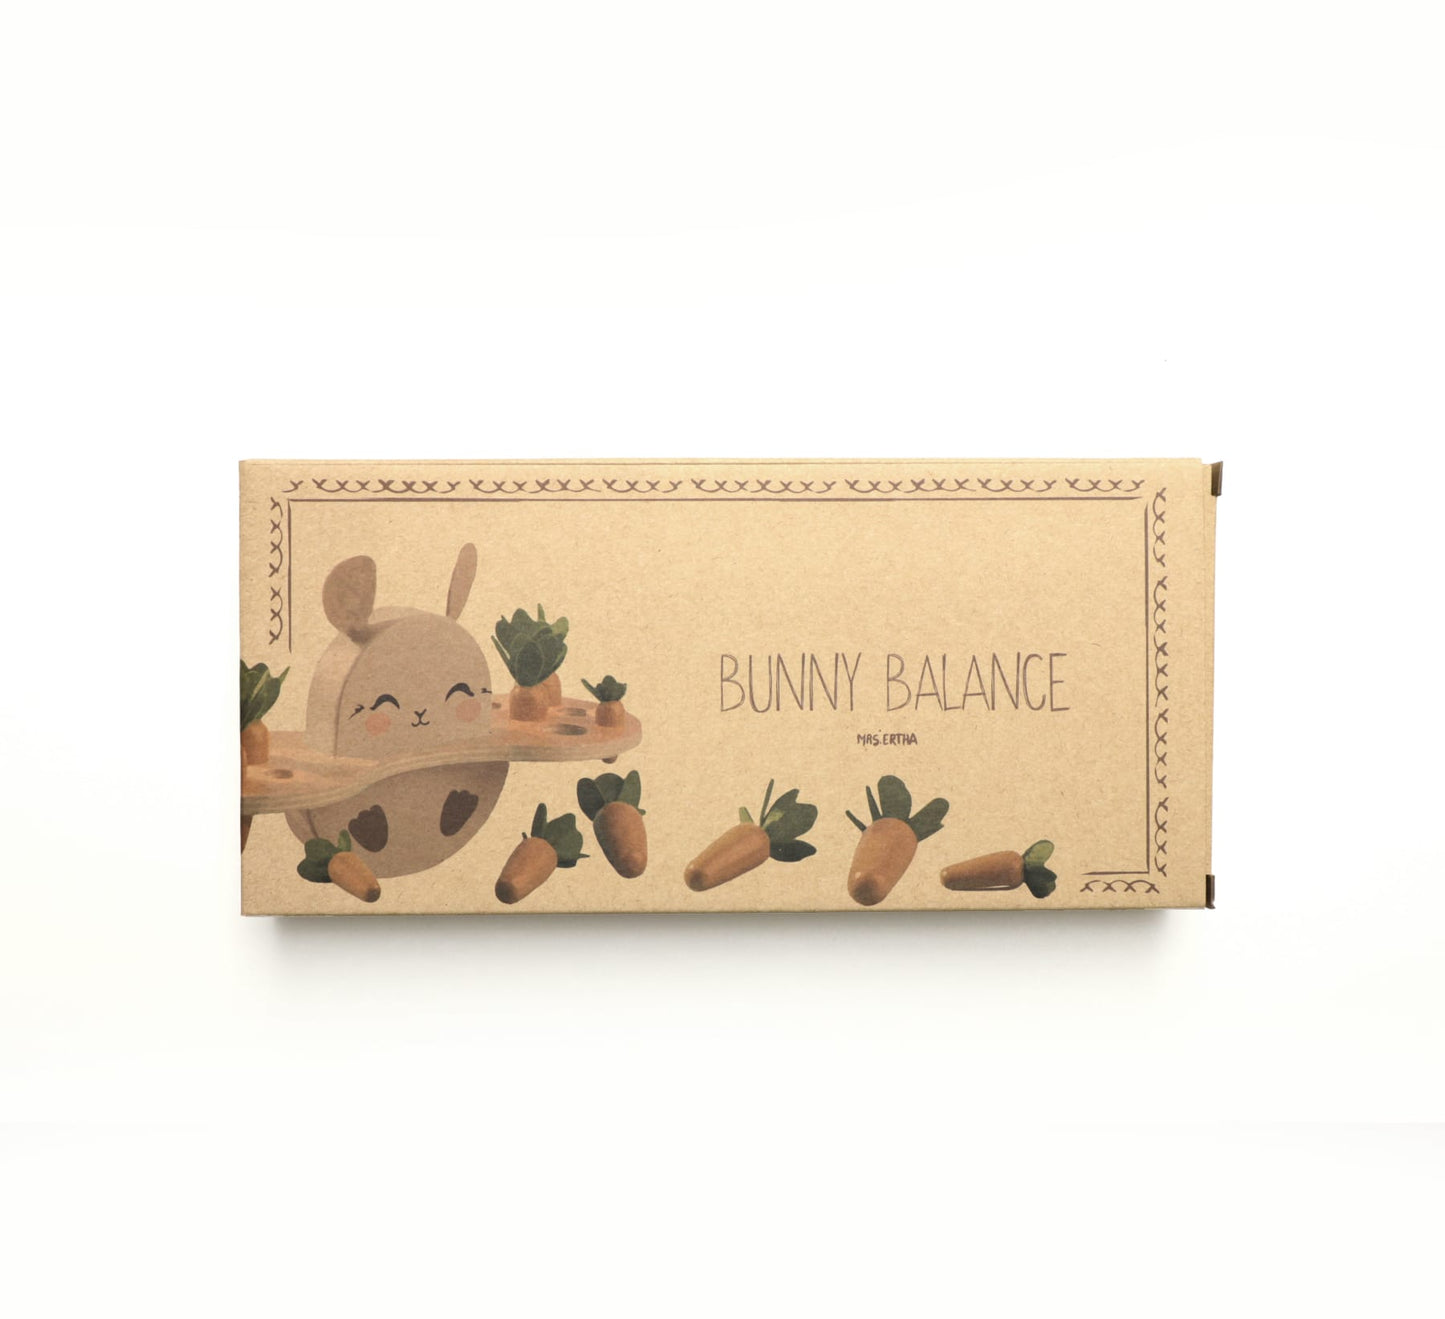 Bunny Balance - Casse-tête en bois RETOUR STOCK JUIN 24